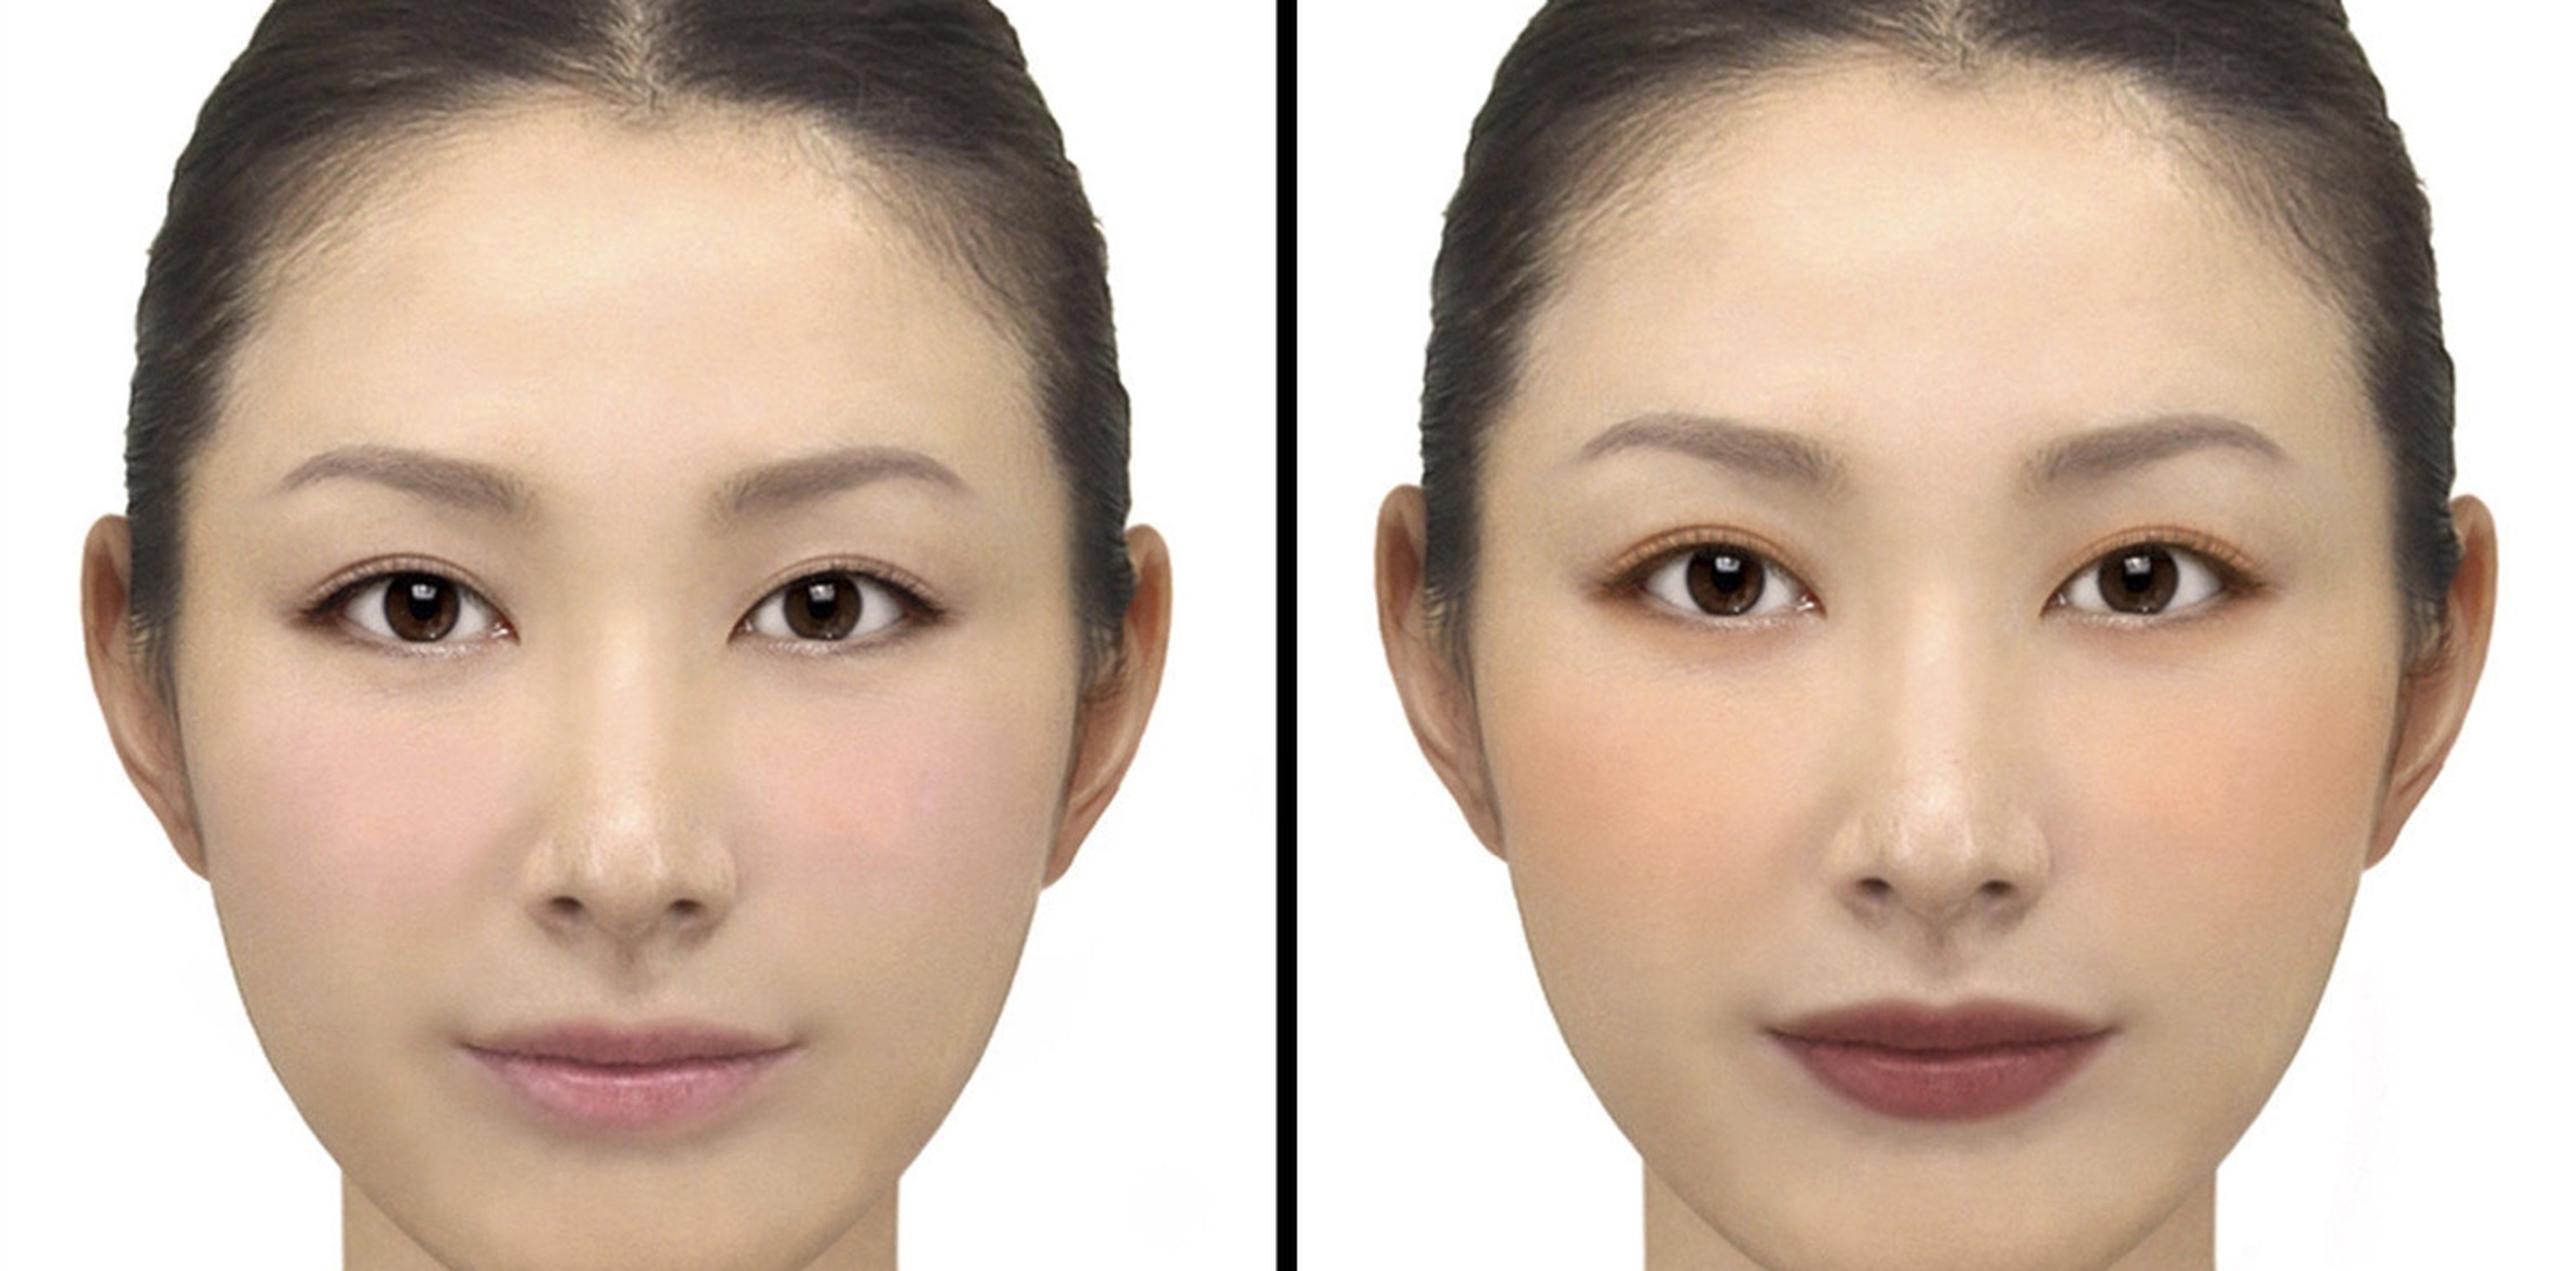 La aplicación permite a los usuarios elegir entre cuatro tonos de maquillaje que, mientras se está en cámara, se sincroniza con los movimientos faciales, mientras estos no sean violentos.